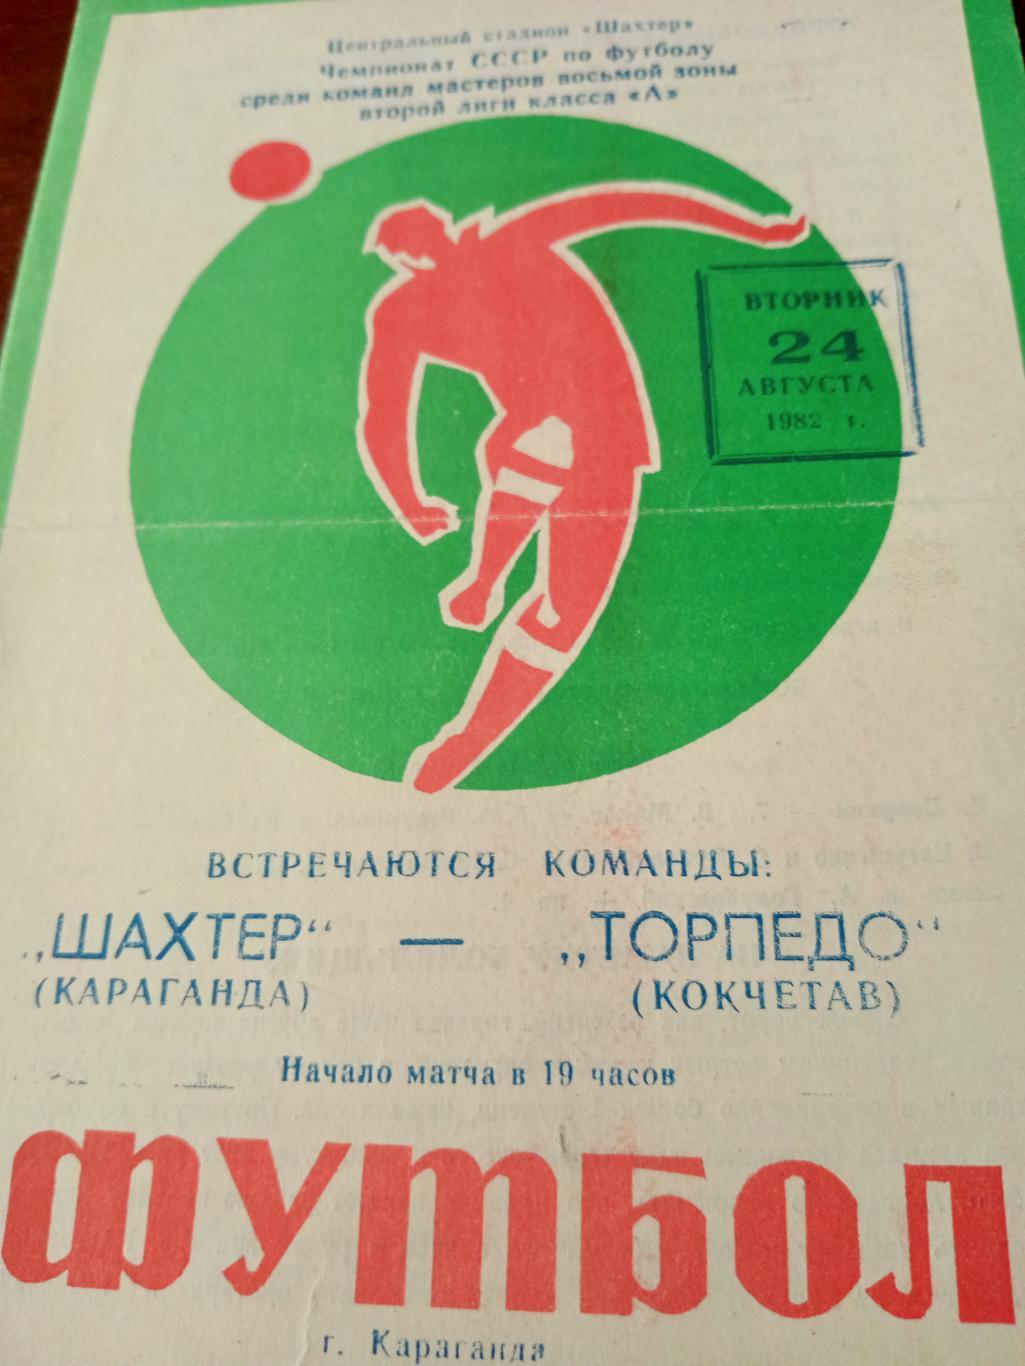 Шахтер Караганда - Торпедо Кокчетав. 24 августа 1982 год